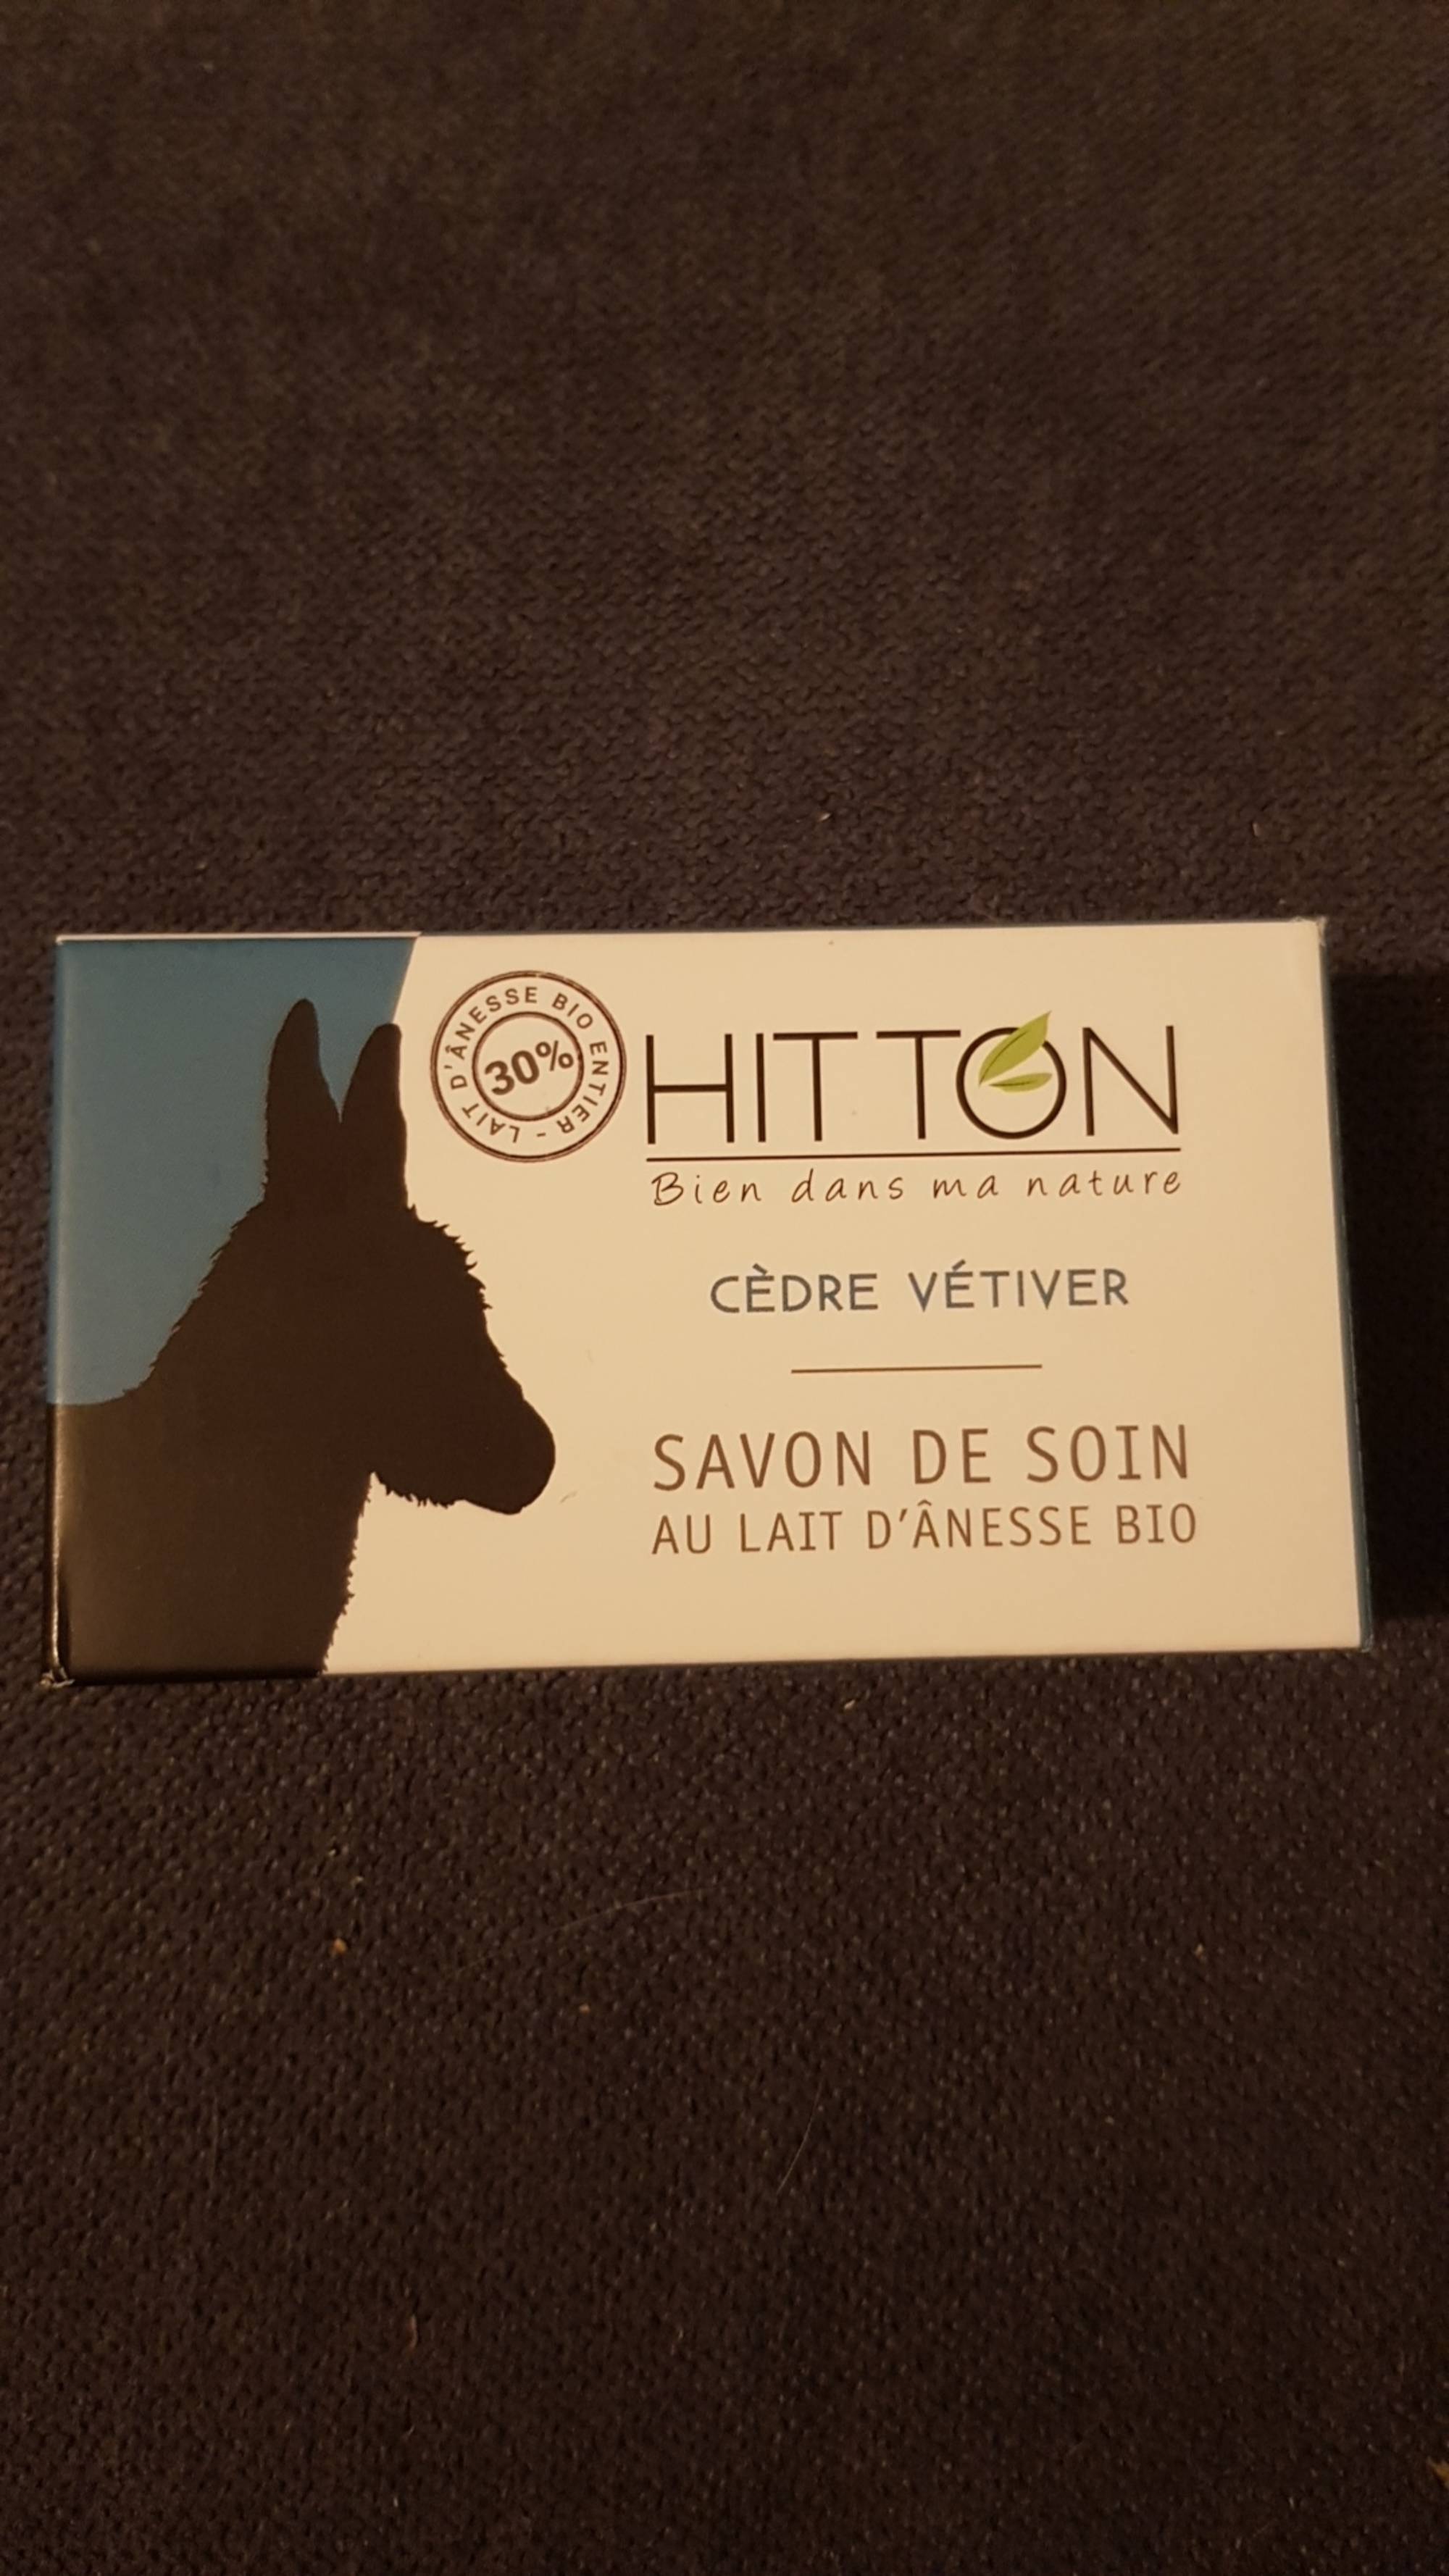 HITTON - Cèdre vétiver - Savon de soin au lait d'ânesse bio